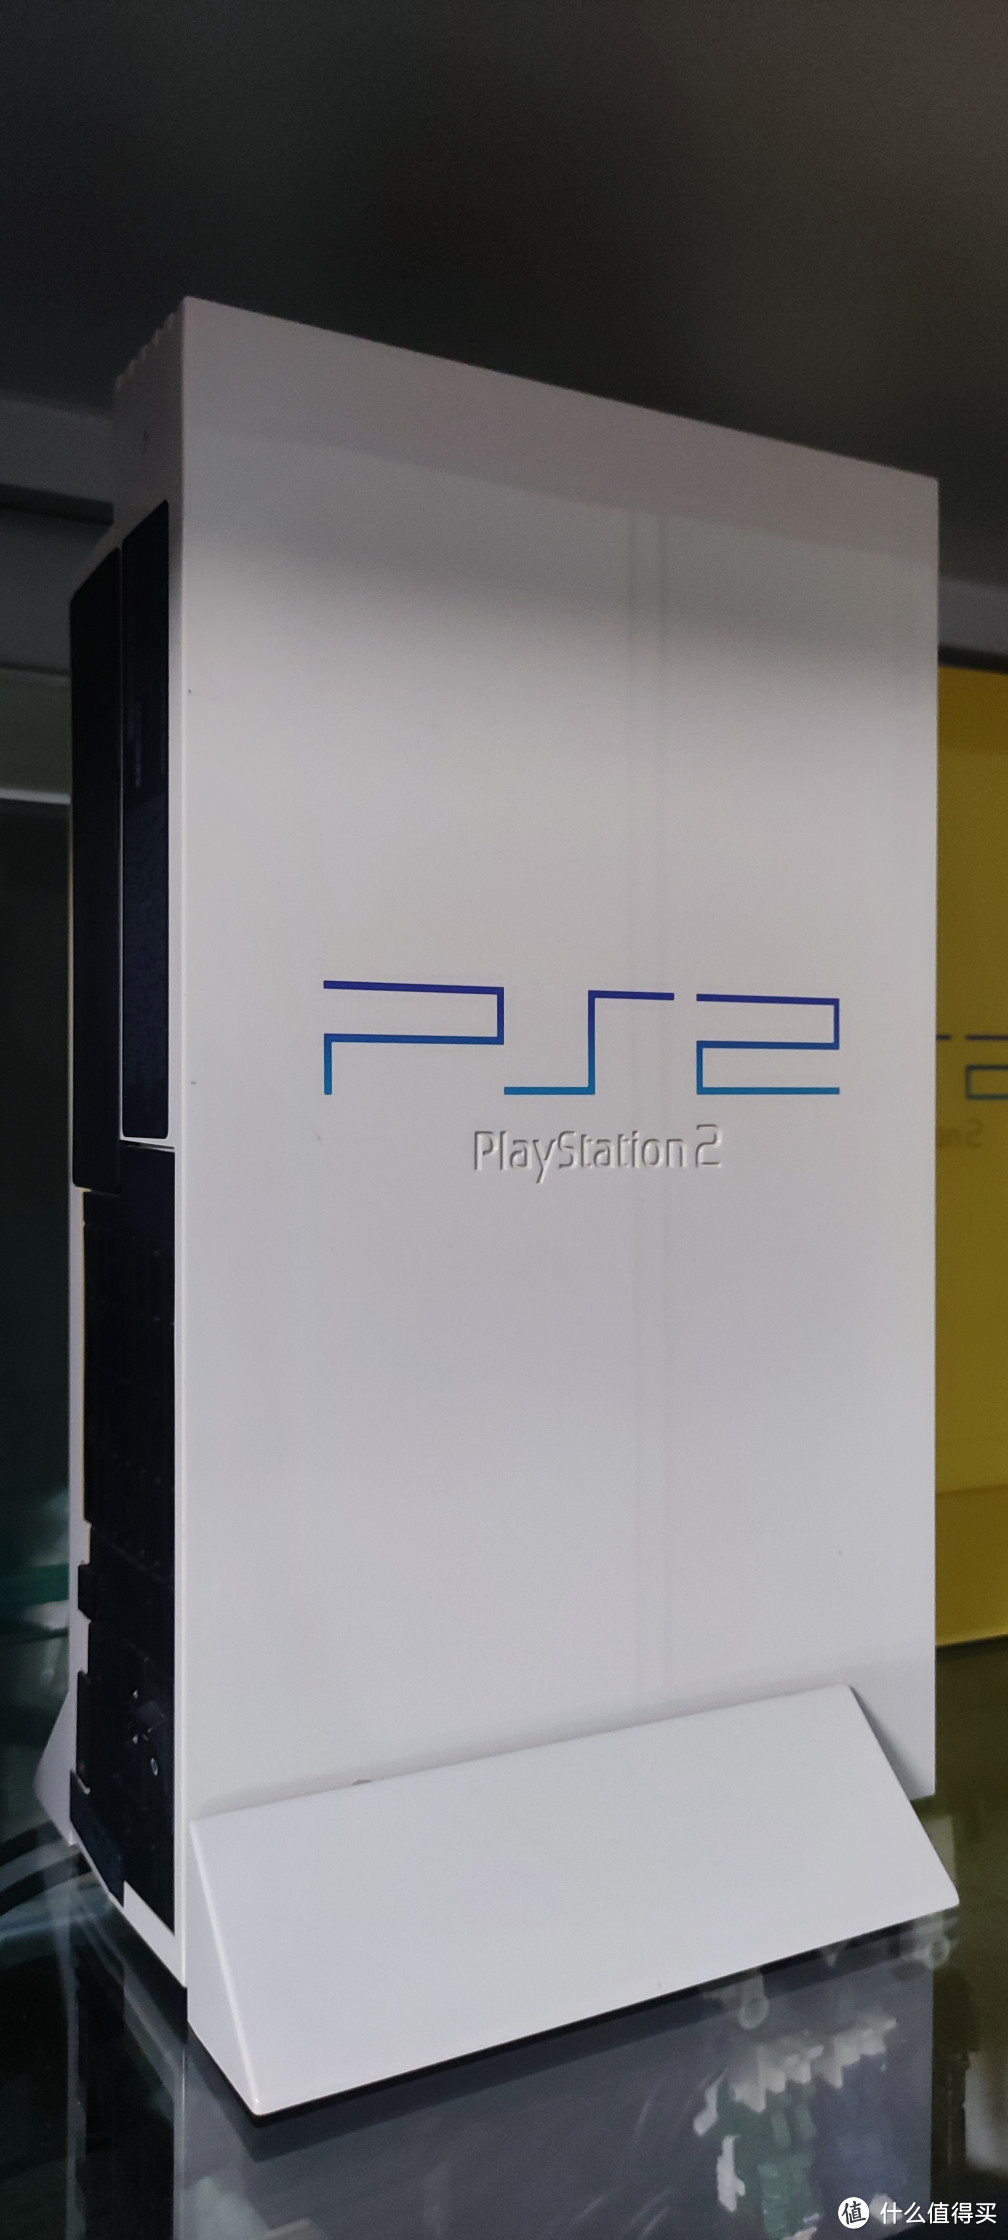 稀有限定版开箱 PlayStation2 二千万台发售纪念 特别限定